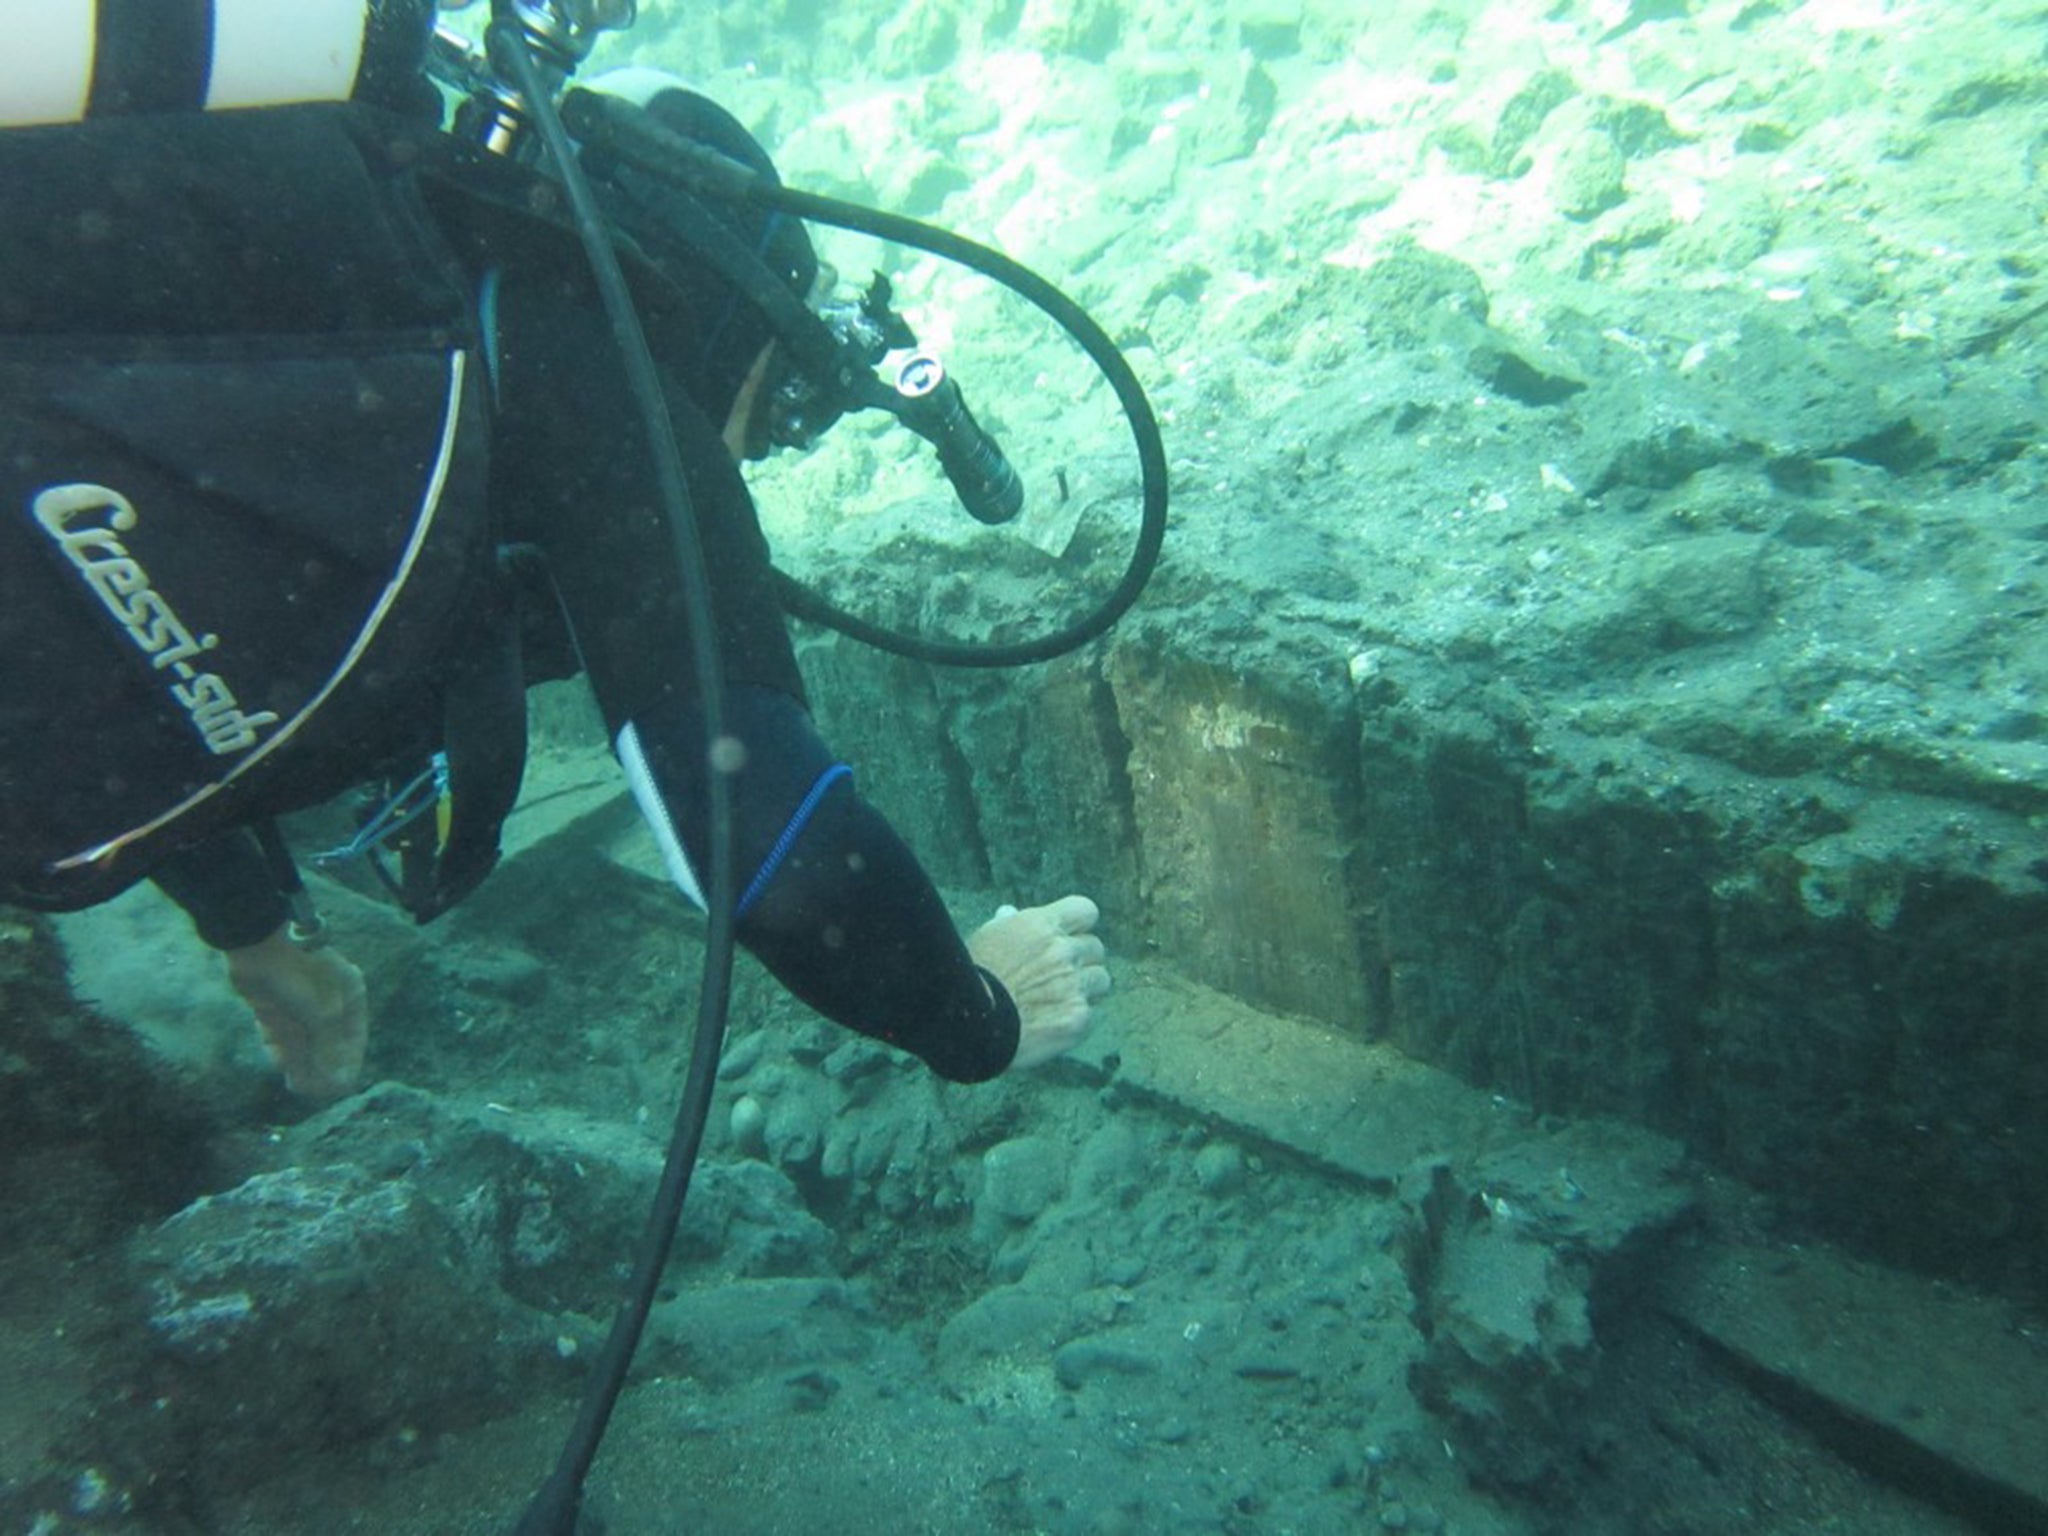 Divers at ancient ruins